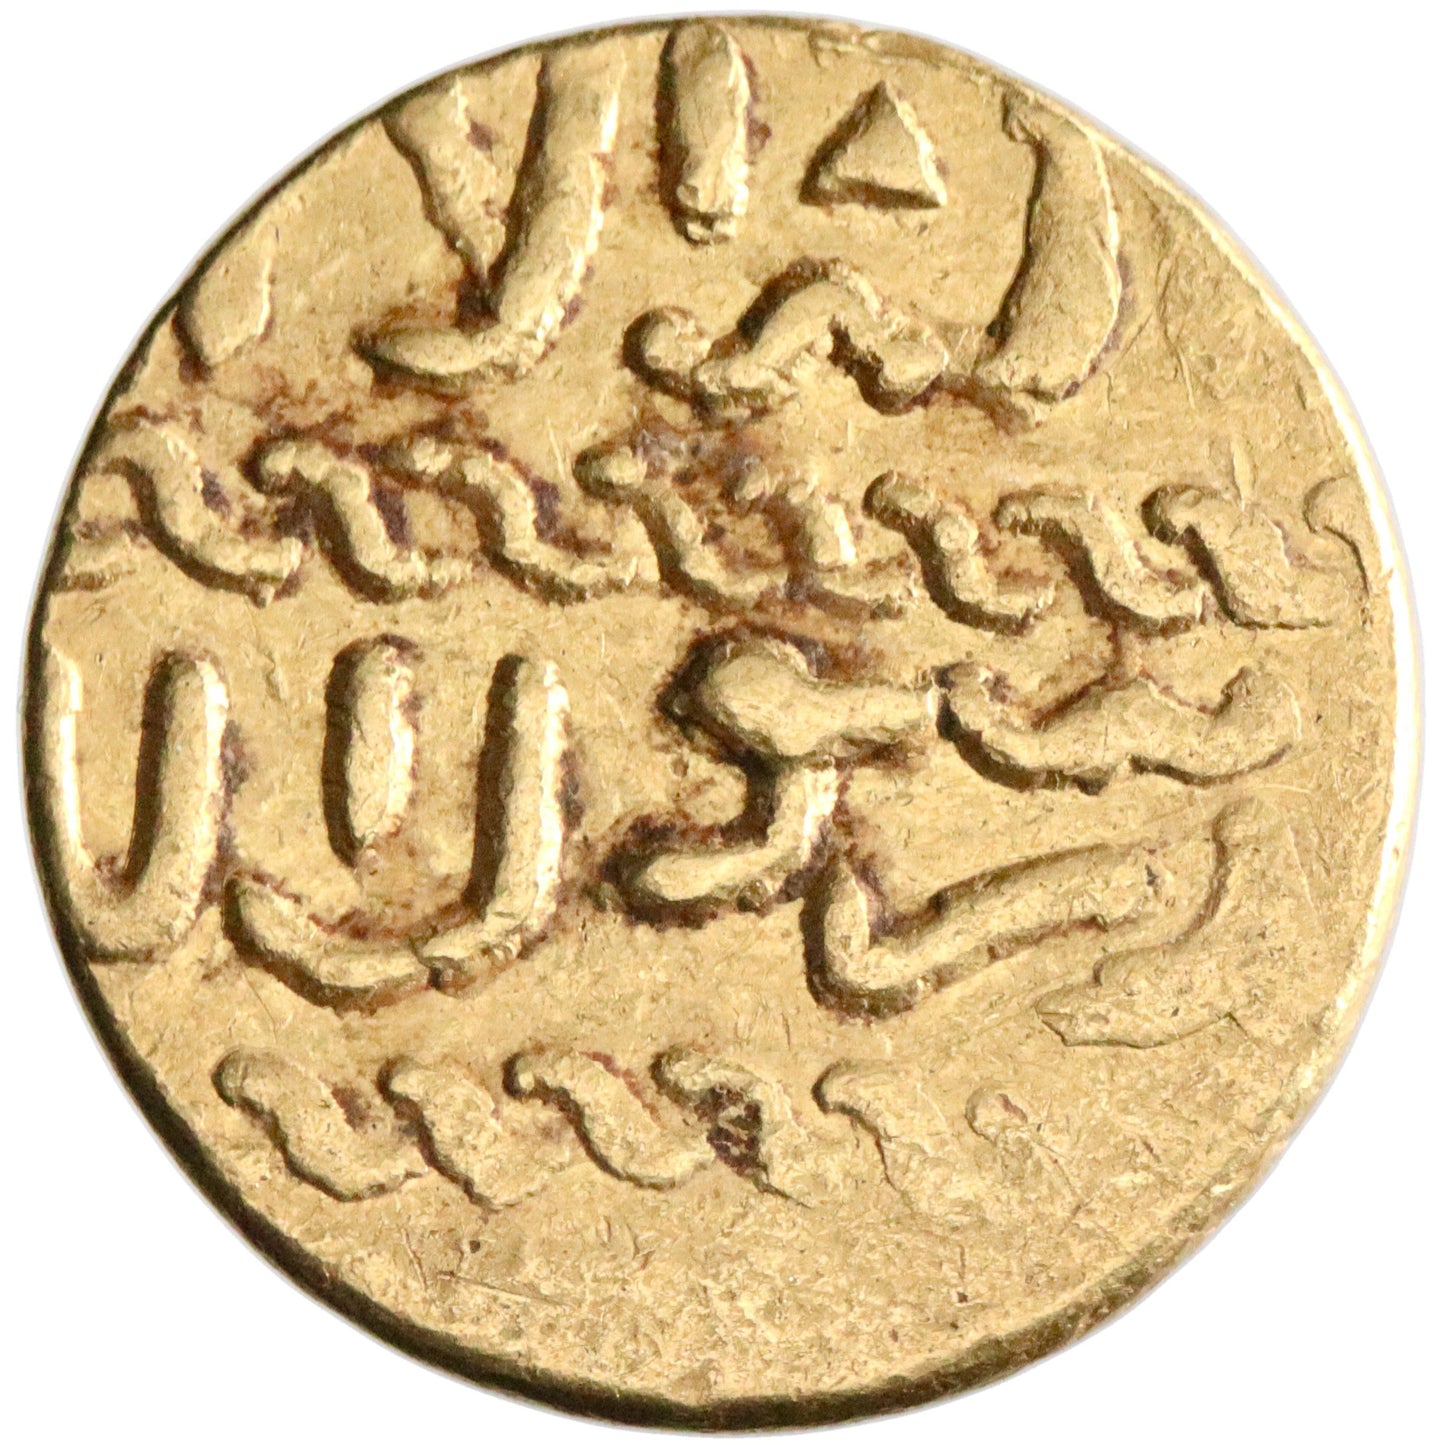 Burji Mamluk, Qa'itbay, gold ashrafi, AH 873-901